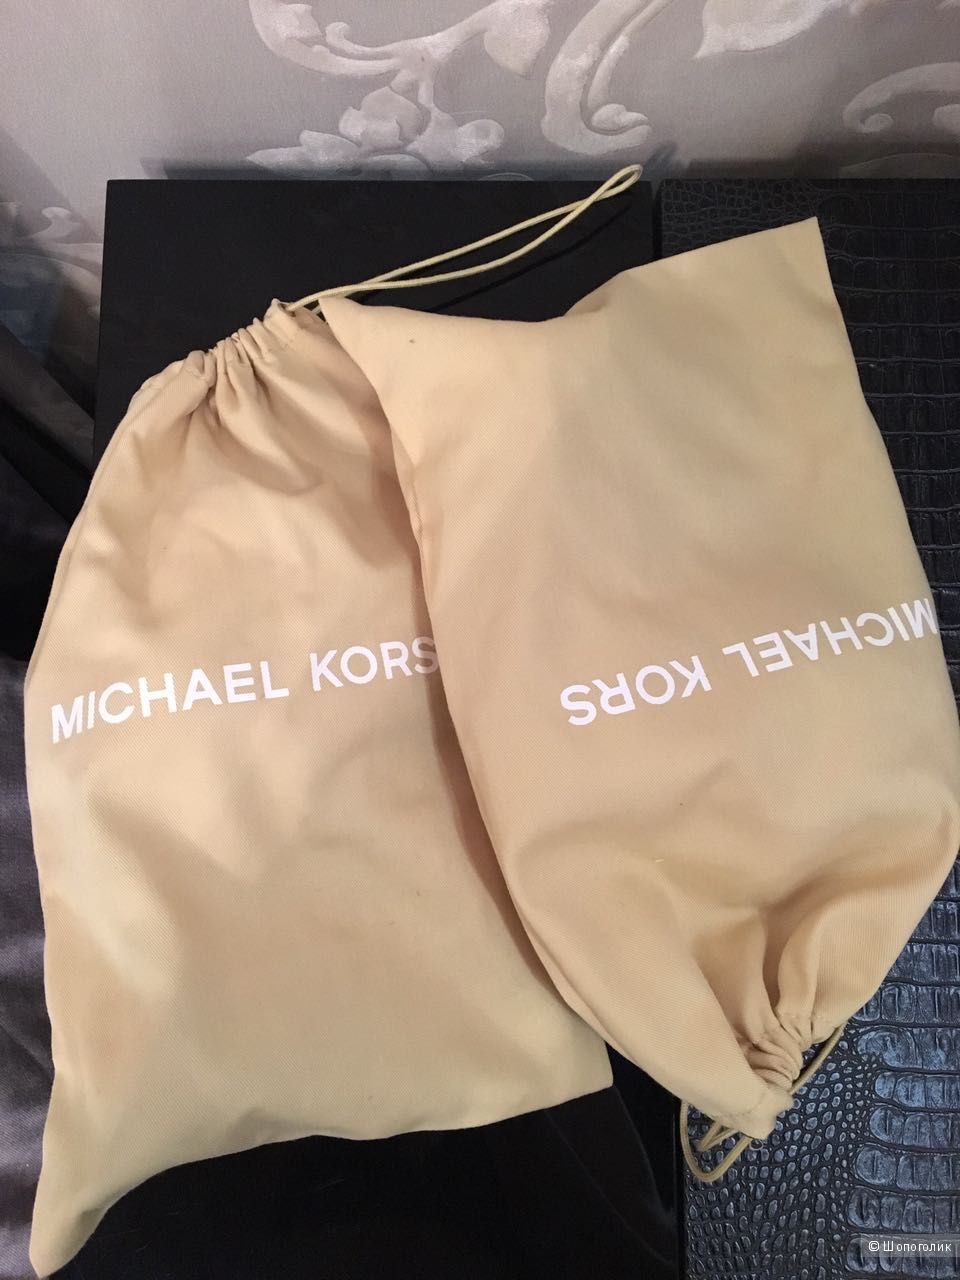 Новые босоножки Michael Kors Nell с пряжкой из позолоты 18К золота